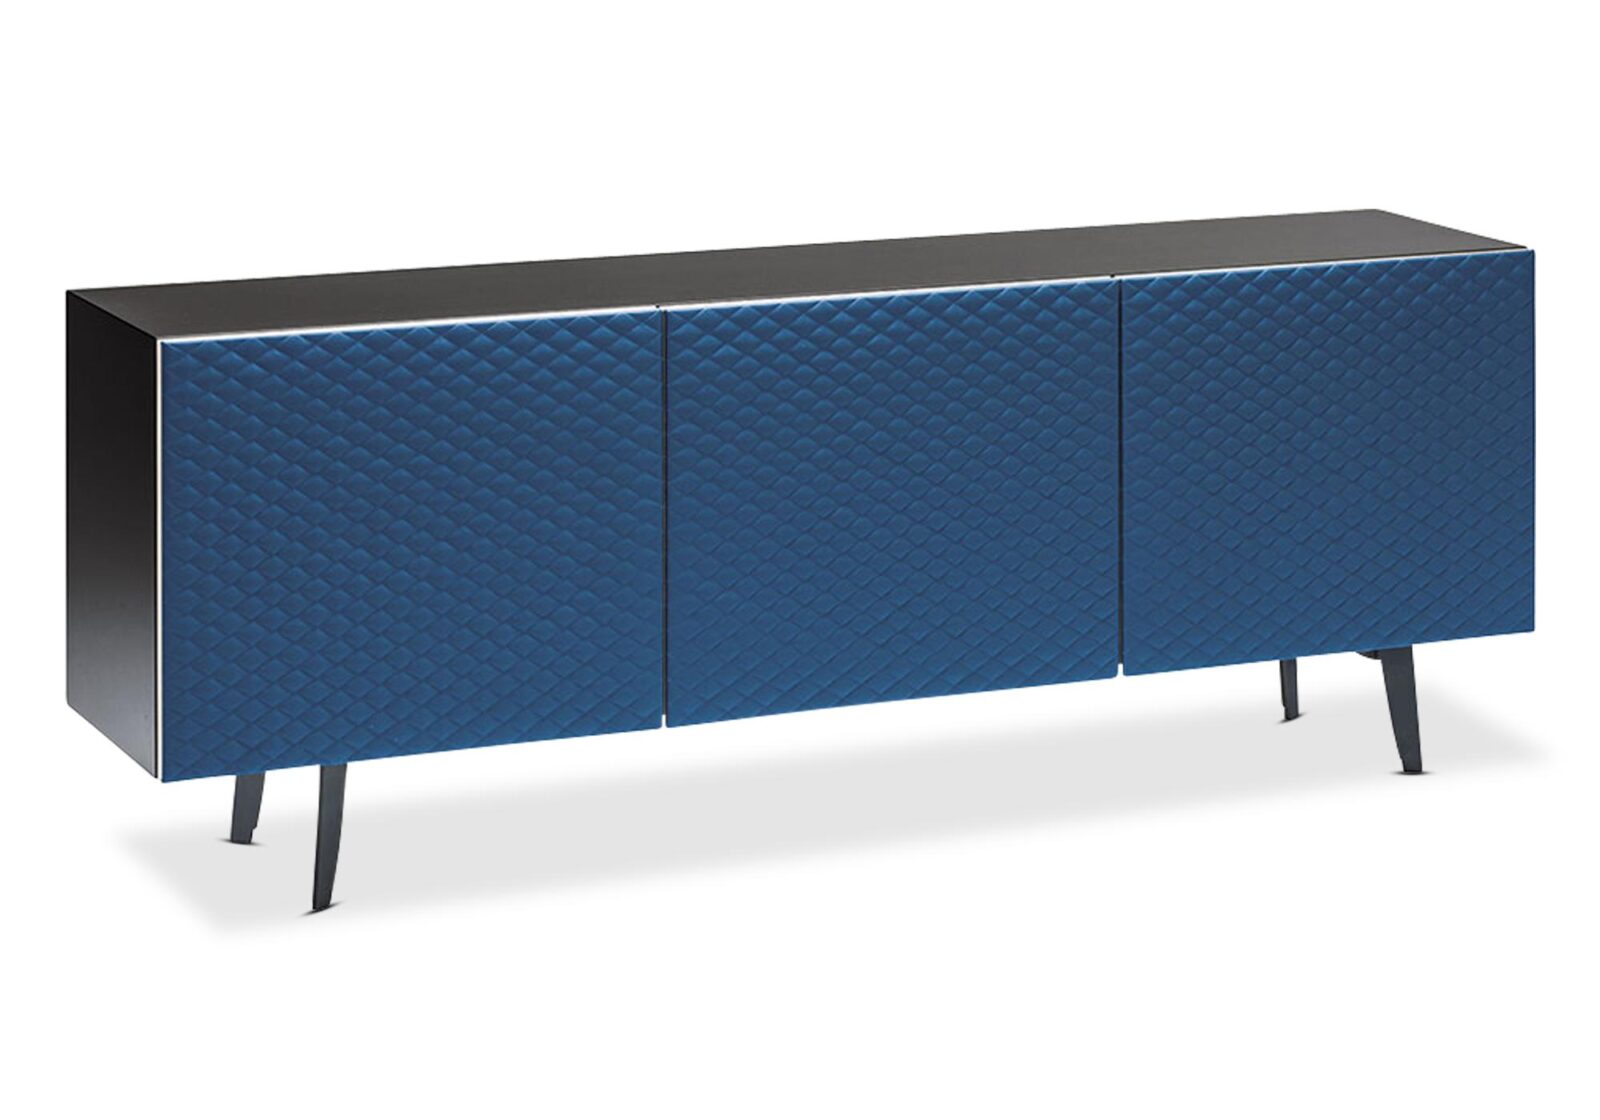 Sideboard Teorama mit 3 Türen in Textilleder. Blau/schwarz matt. B 220 T 46 H 80cm. Erhältlich bei Möbel Gallati.